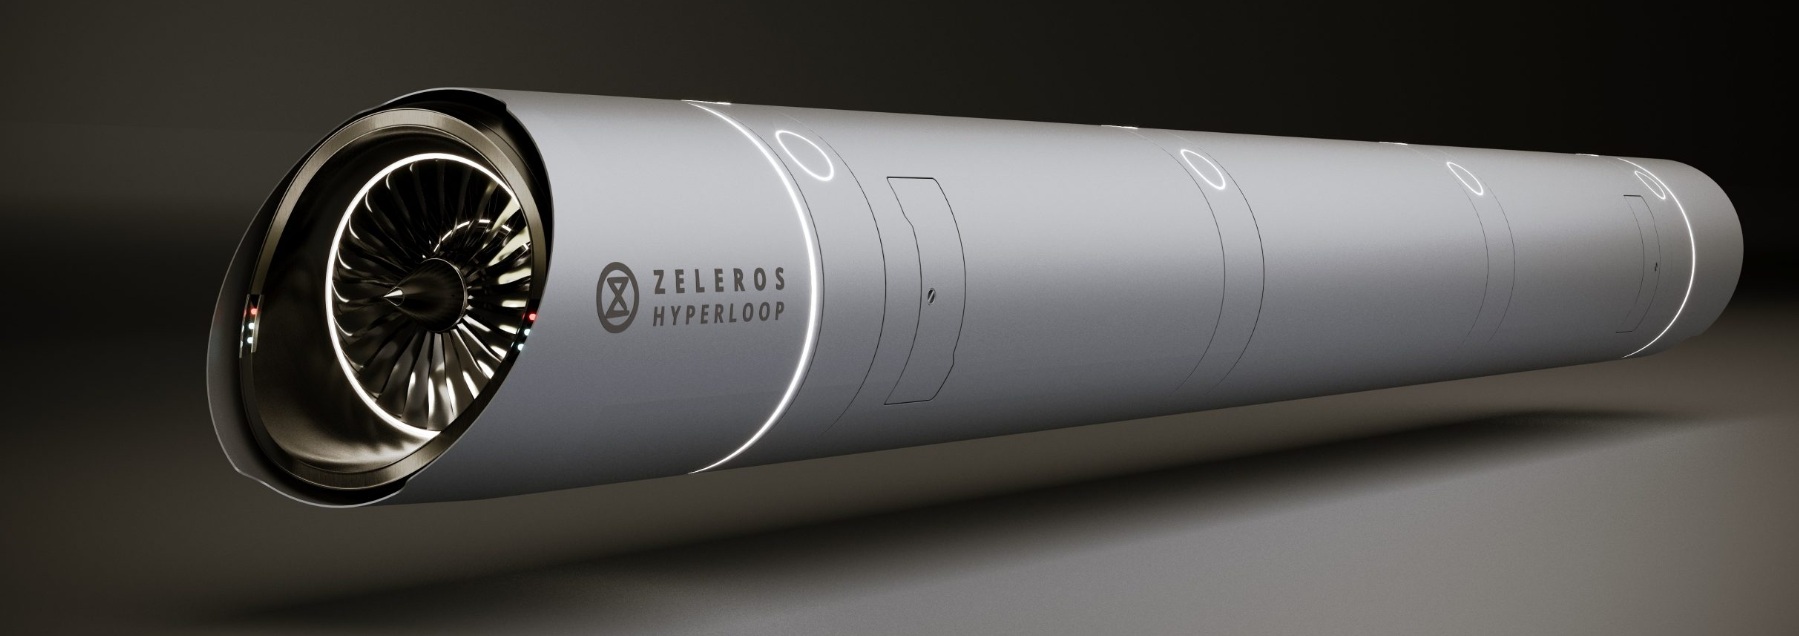 zeleros hyperloop y el tren de alta velocidad futuro de España 2